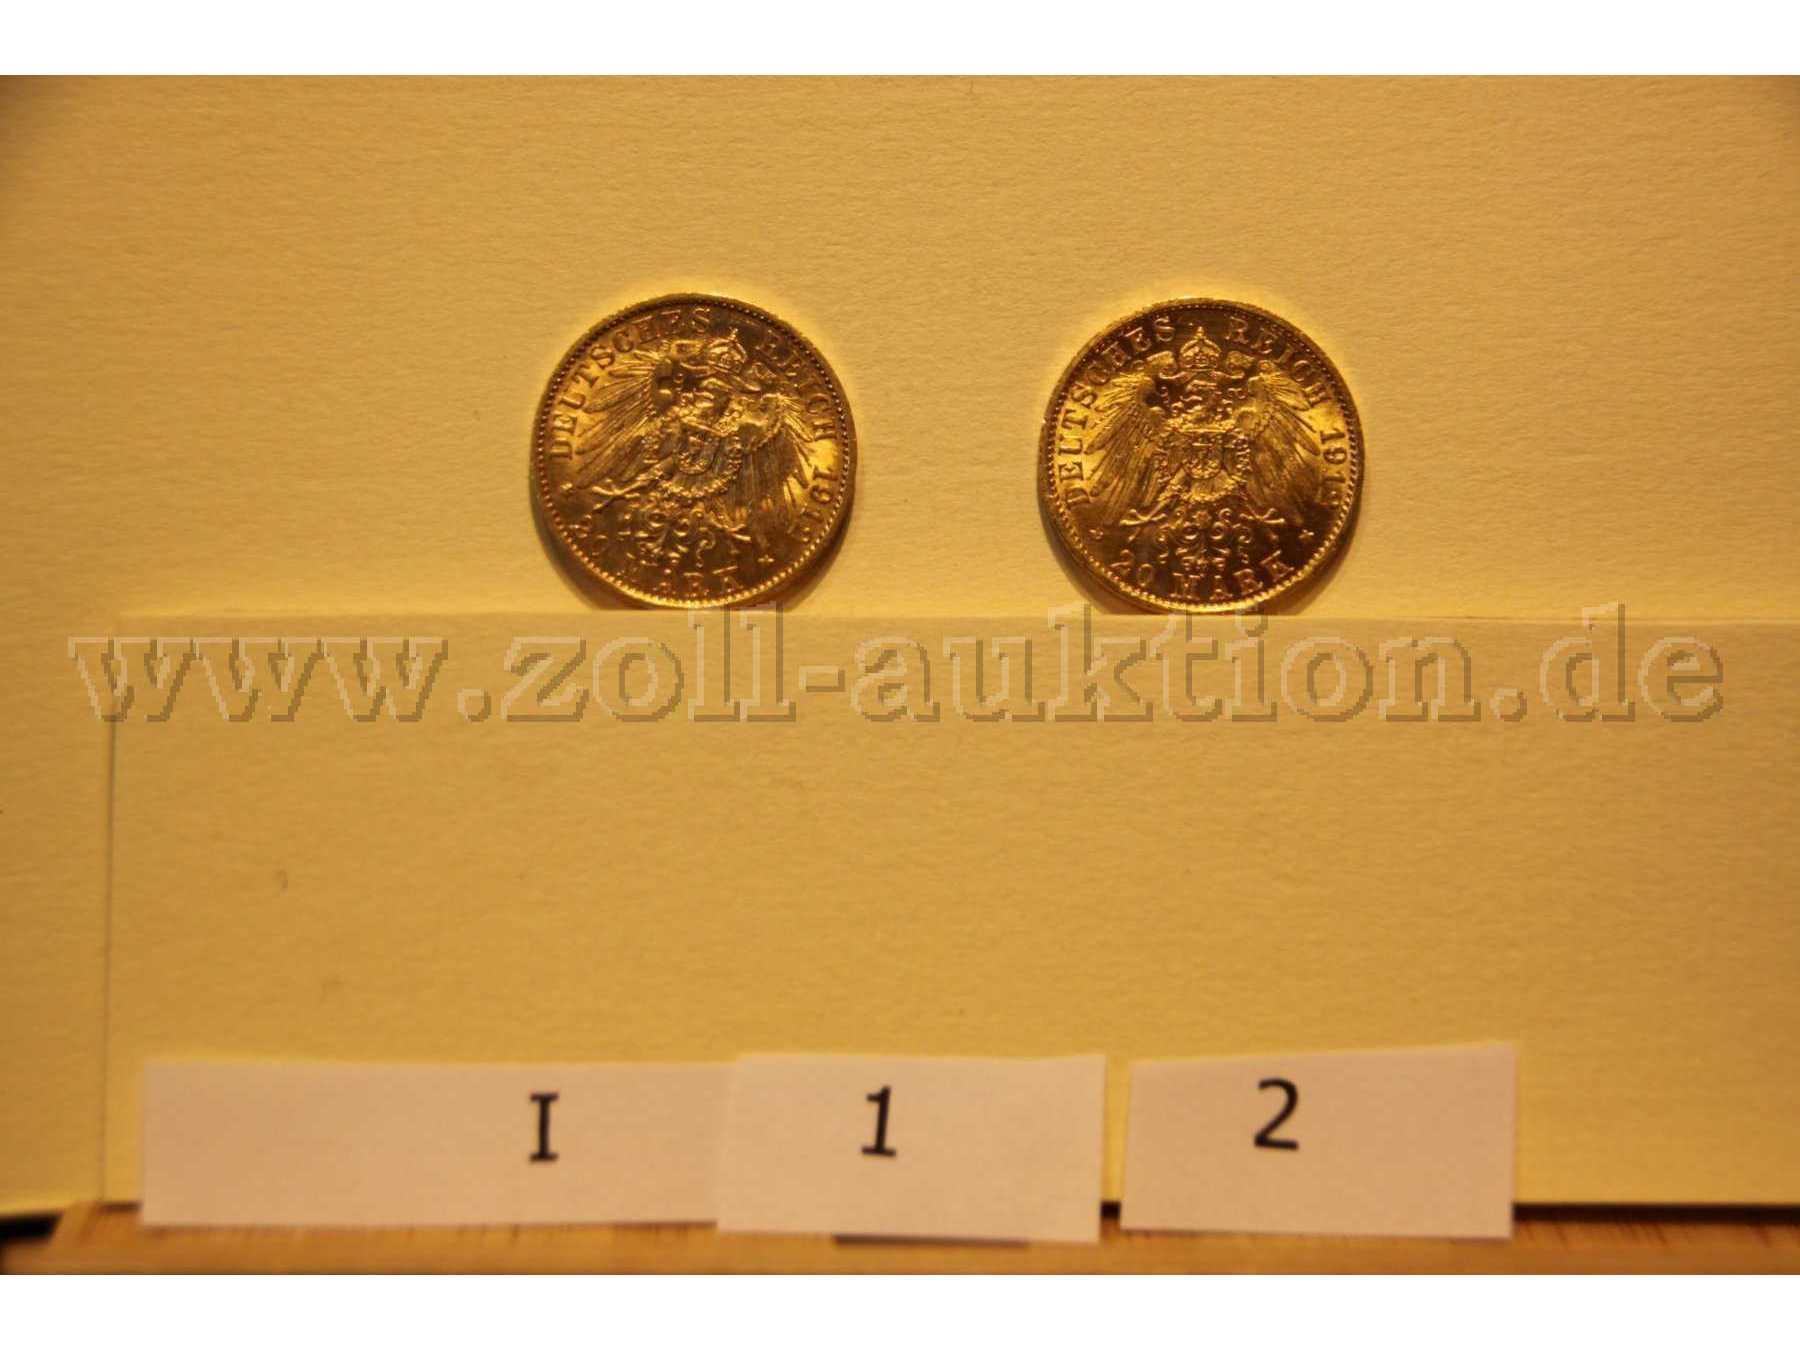 Ansicht Rückseite der Münze I1 und I2